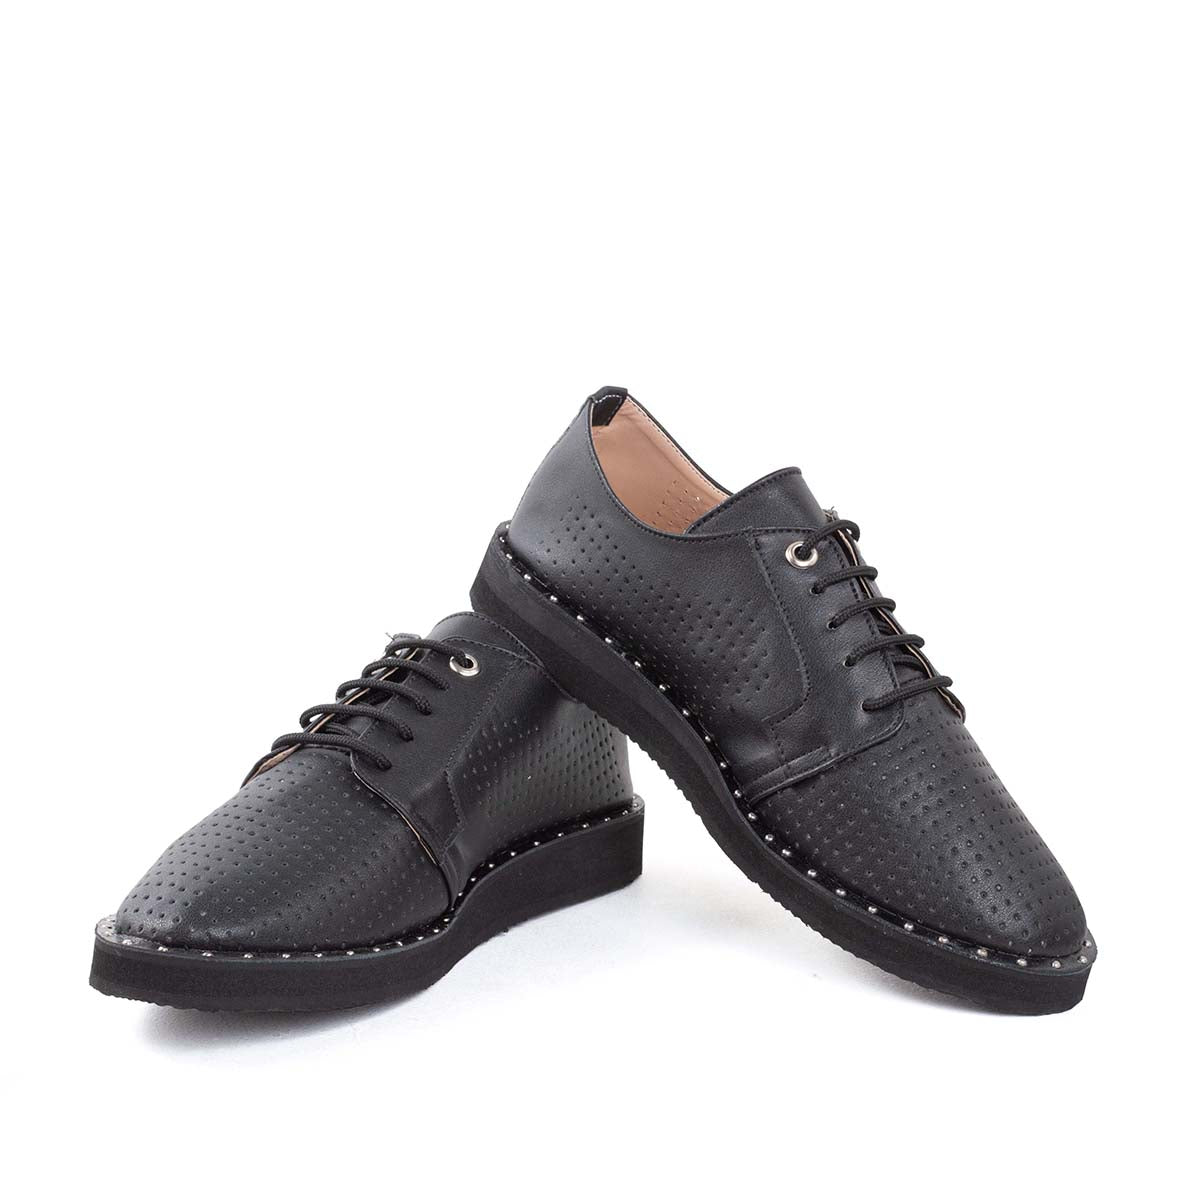 Zapato oxford negro con taches en suela y perforaciones